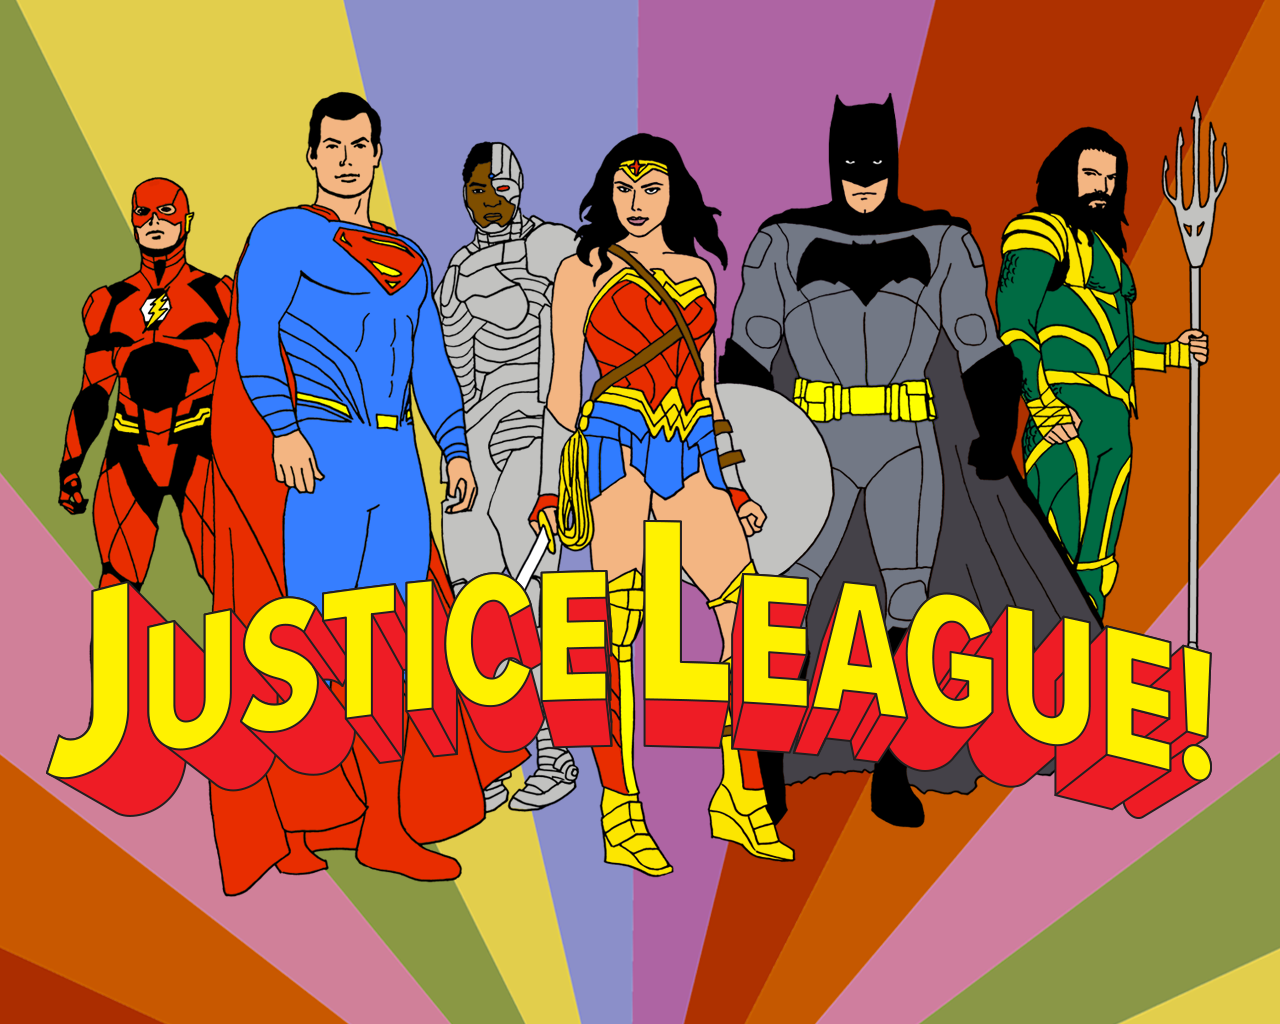 Justice League Cartoon Wallpaper Free Justice League Cartoon Background